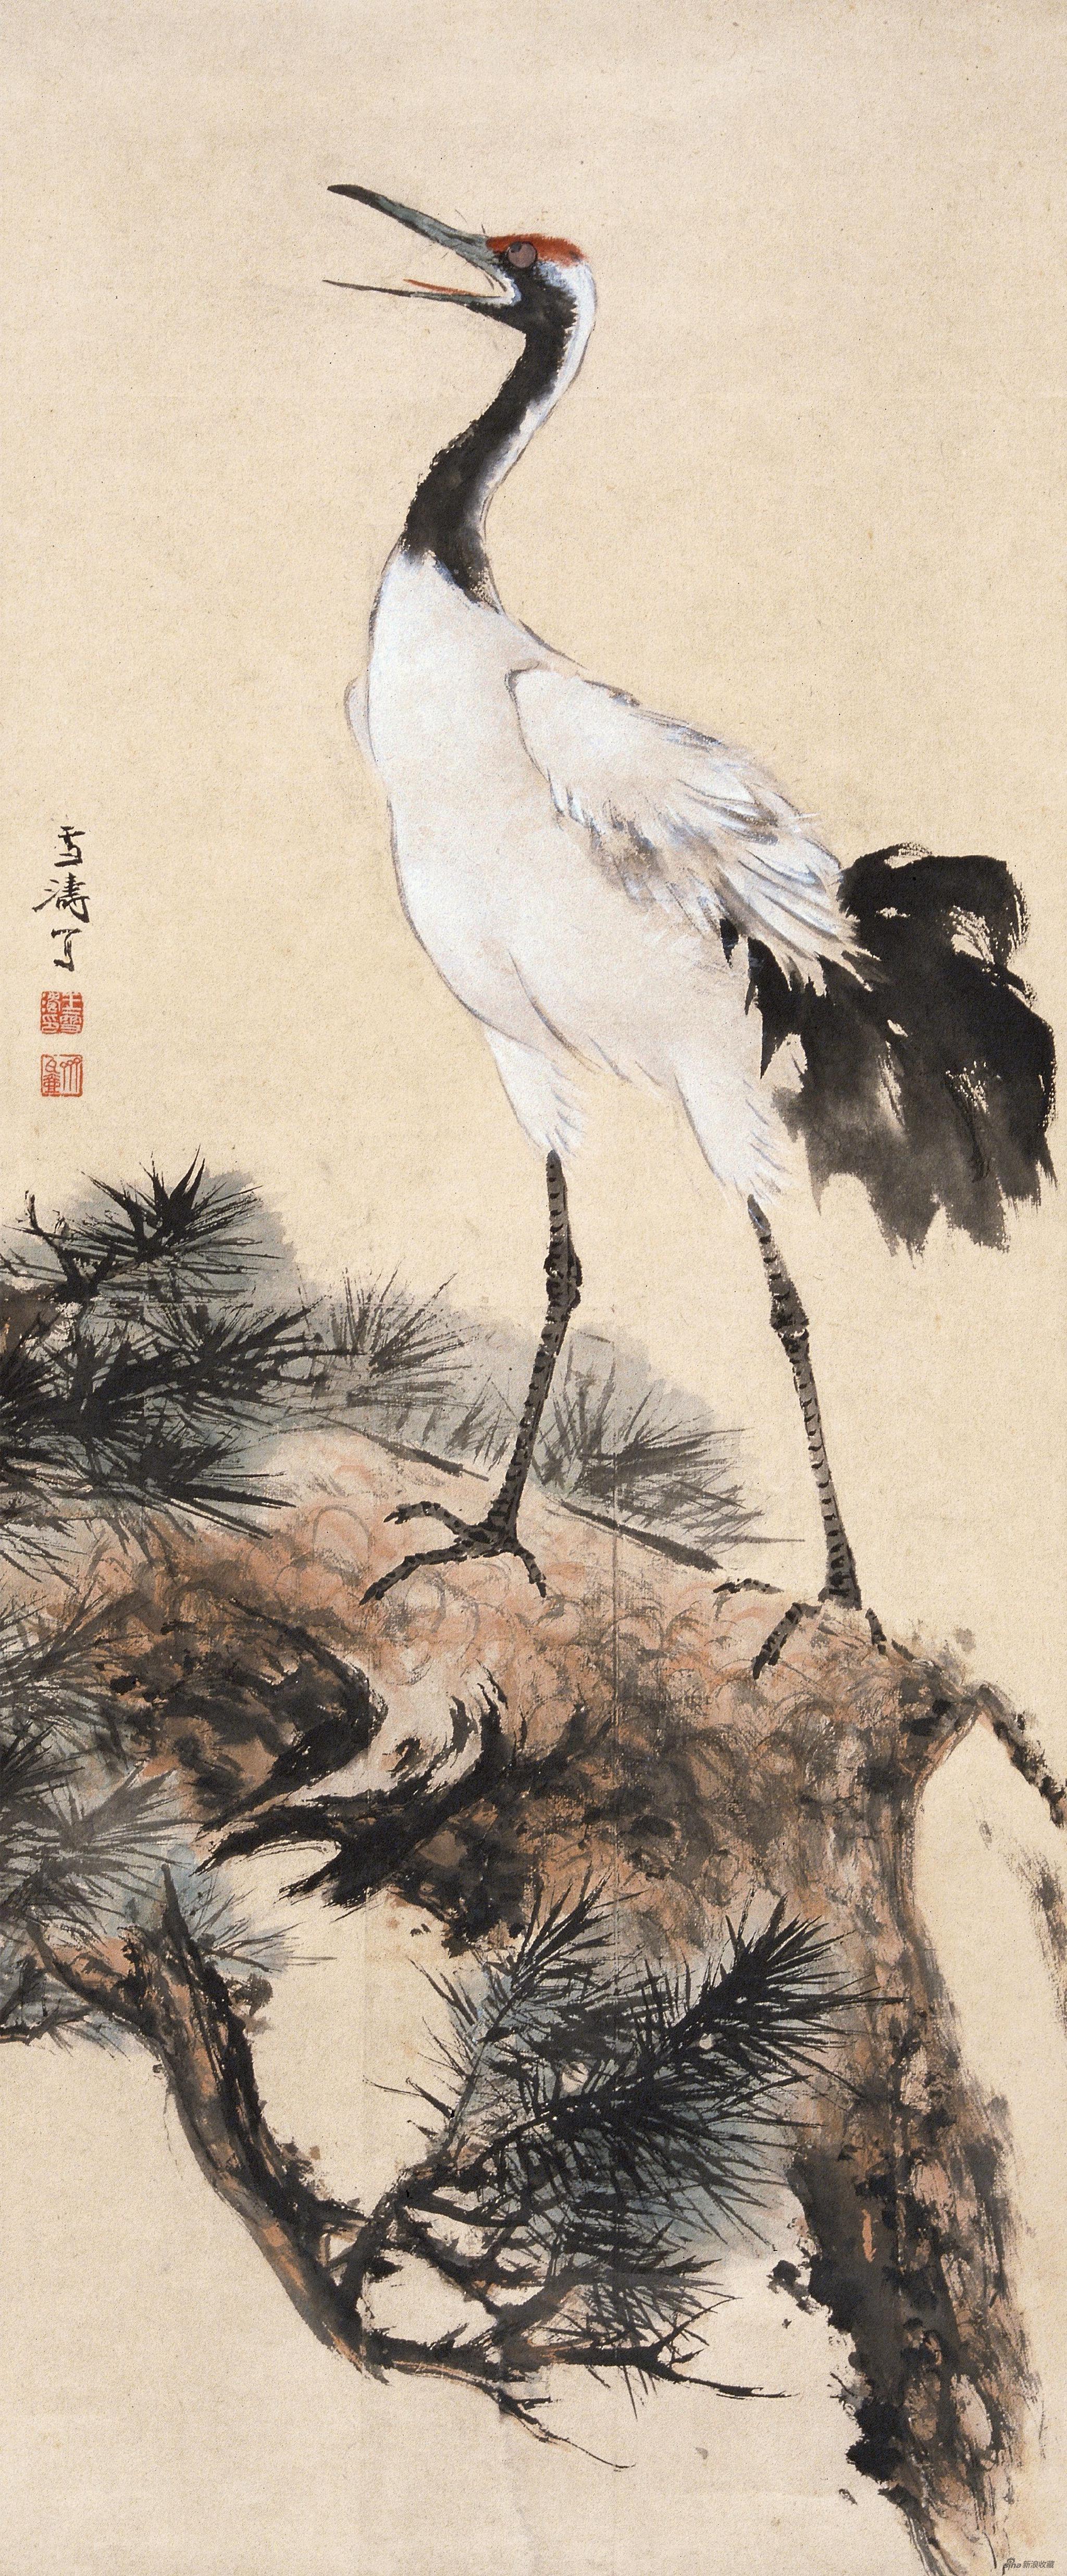 高歌图 王雪涛 135cm×56cm 纸本设色 1956年 北京画院藏